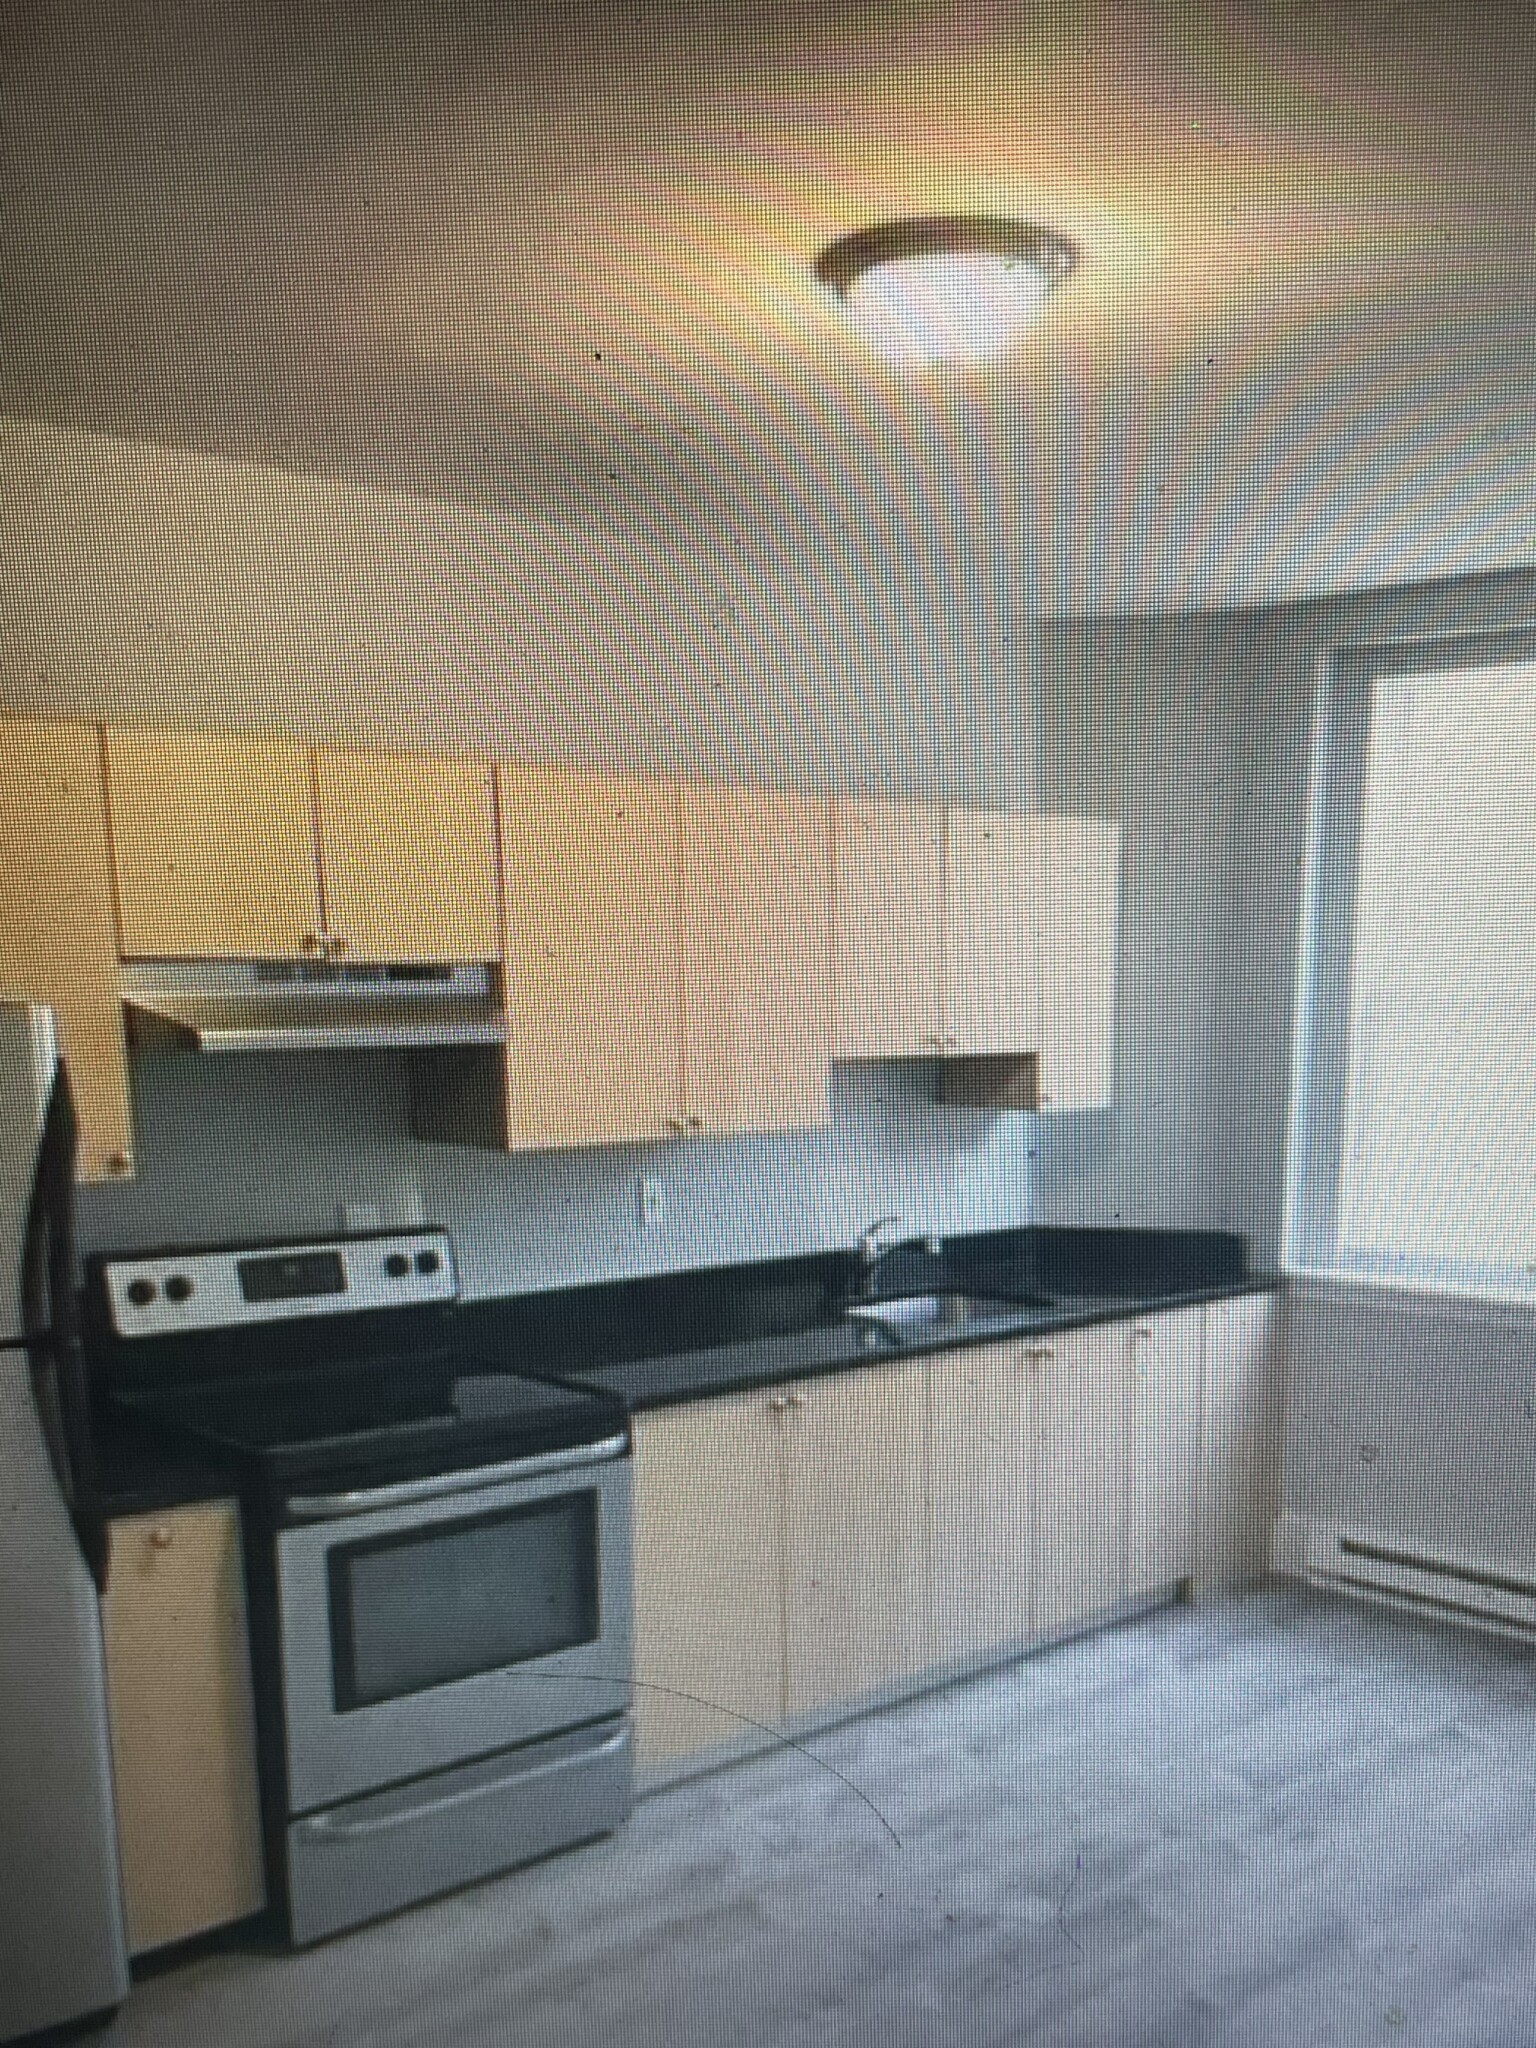 Photos of apartment on Talbot Ave.,Boston MA 02124